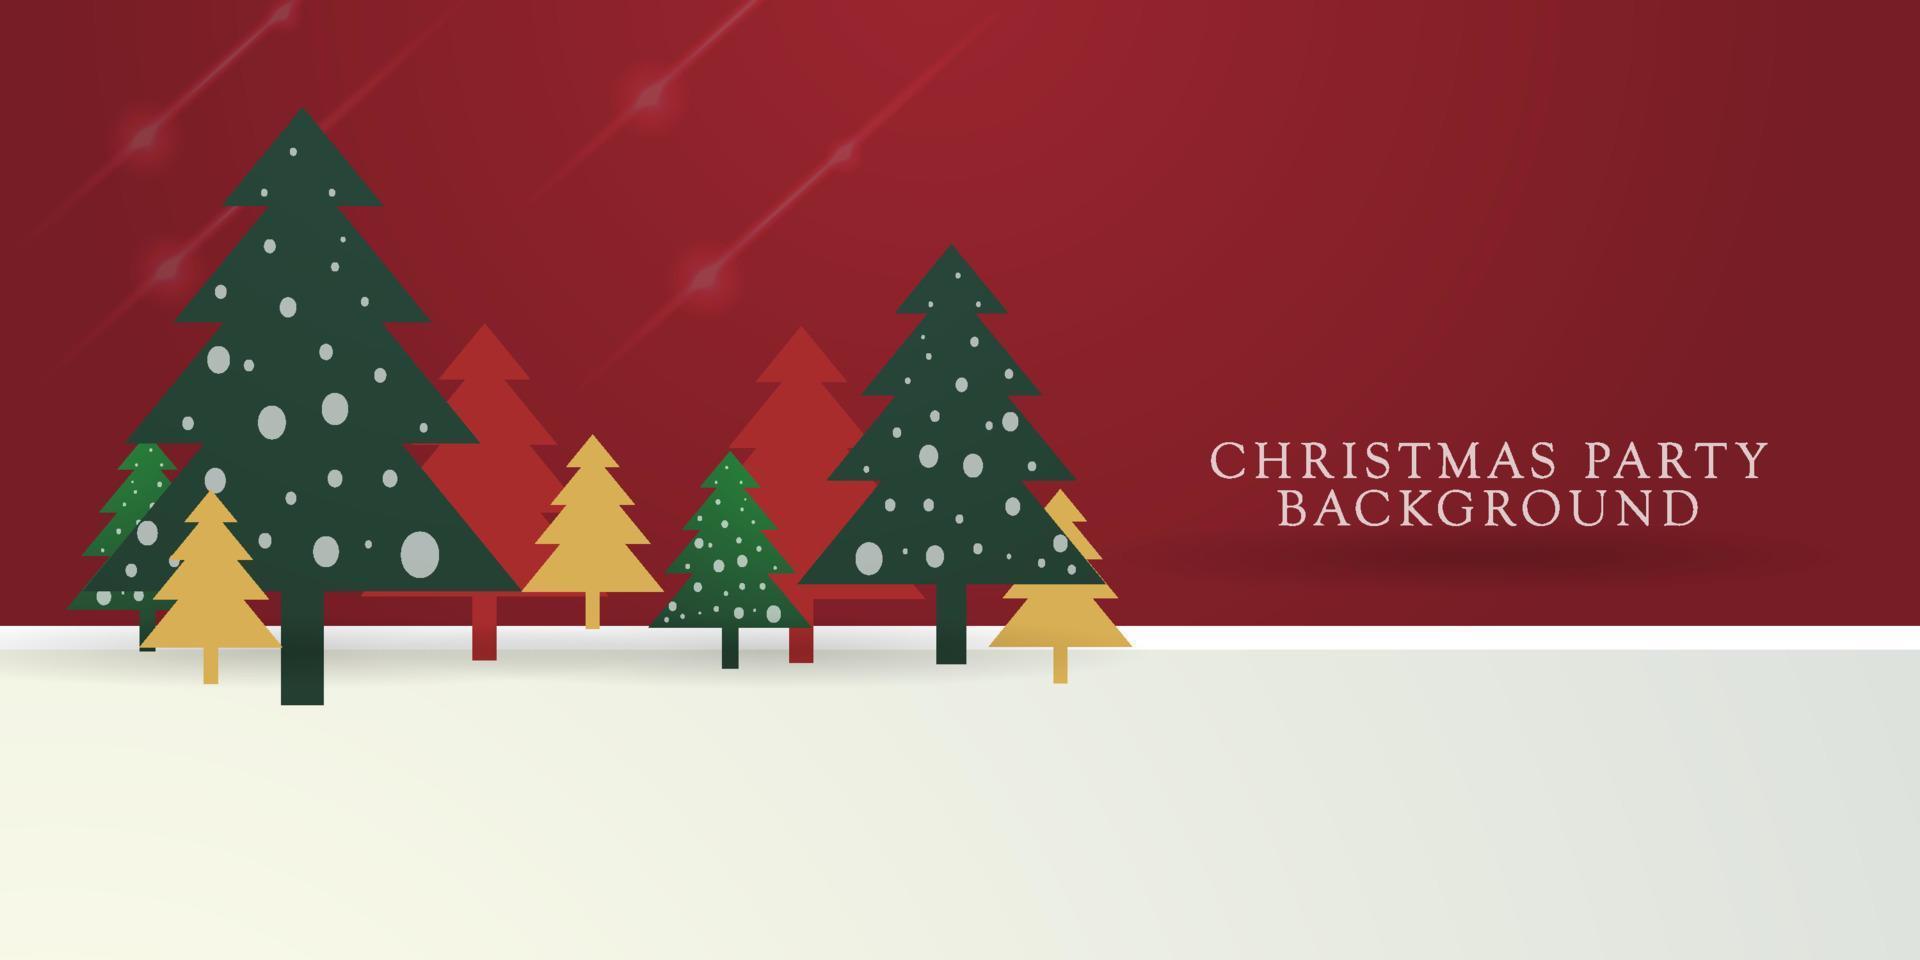 pancarta de navidad composición horizontal de navidad hecha de árboles de navidad de madera y vidrio rojos y blancos. cartel de navidad, tarjetas de felicitación, encabezado o portada de perfil.eps10 vector